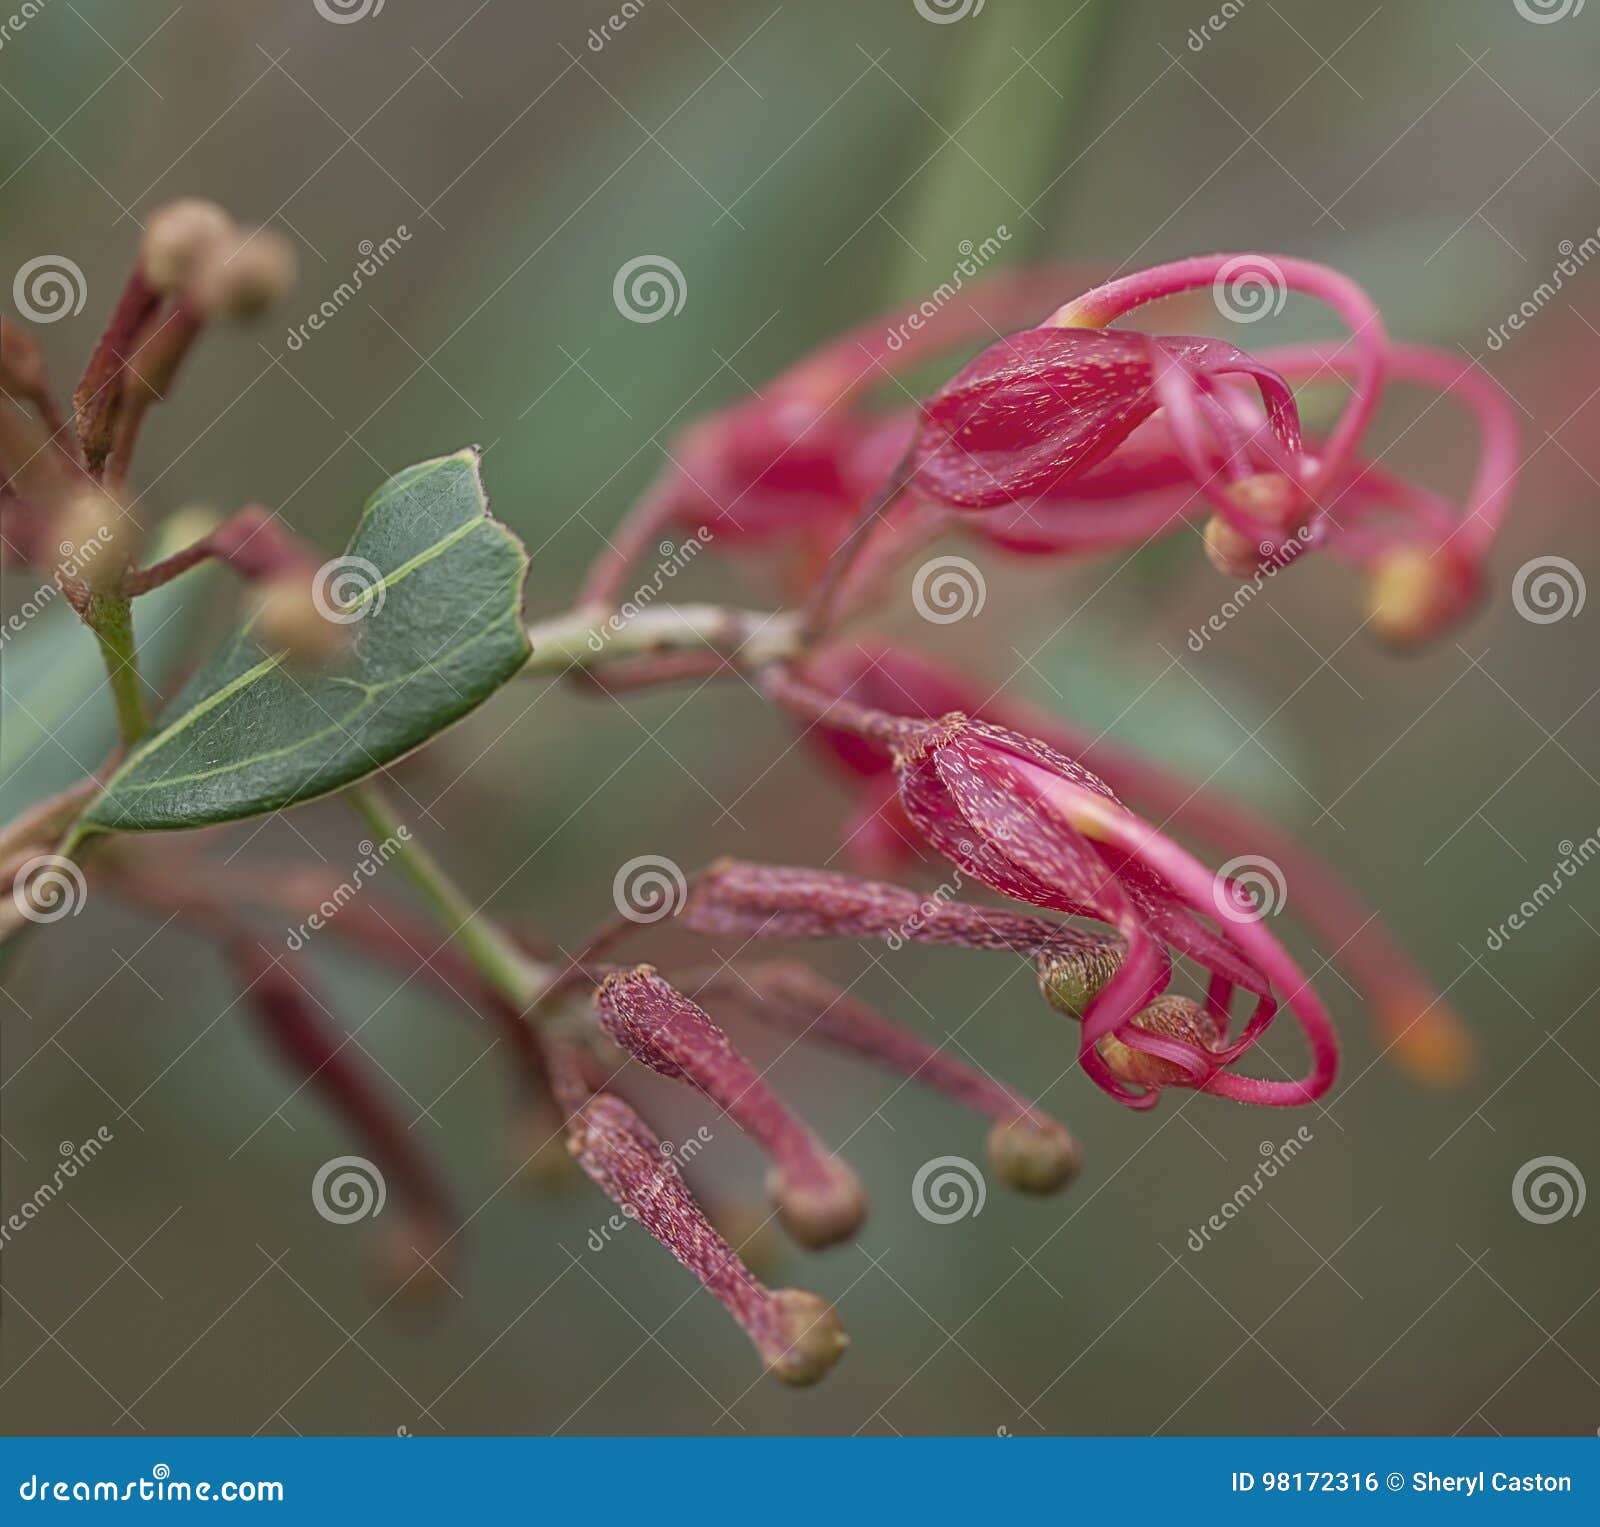 australian red wildflower grevillea splendour macro